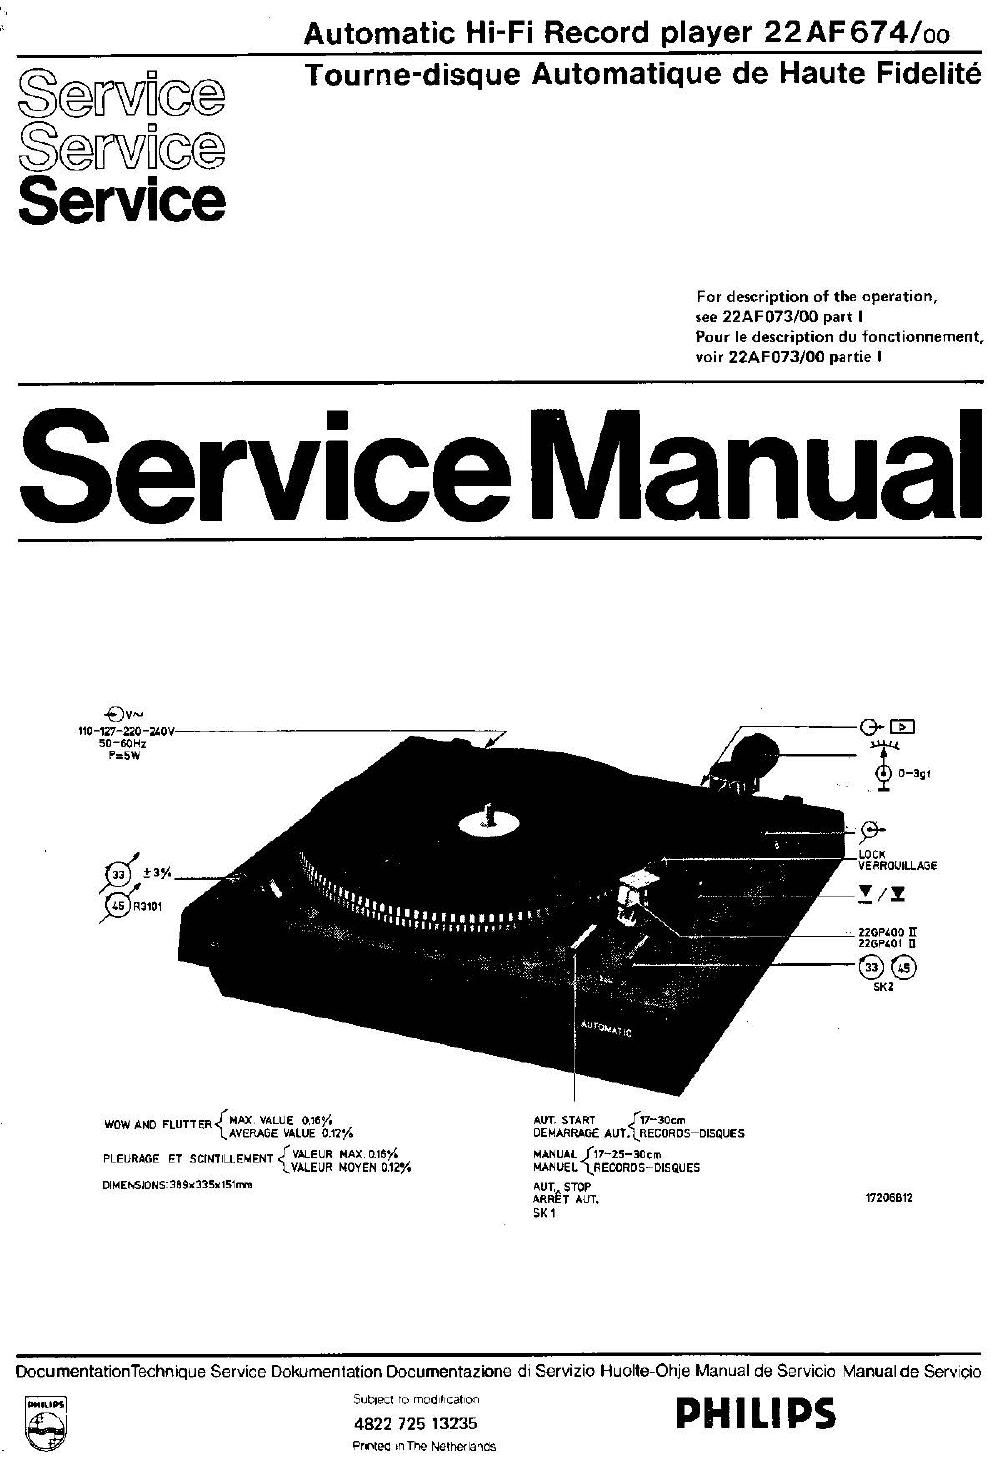 philips 22 af 674 service manual